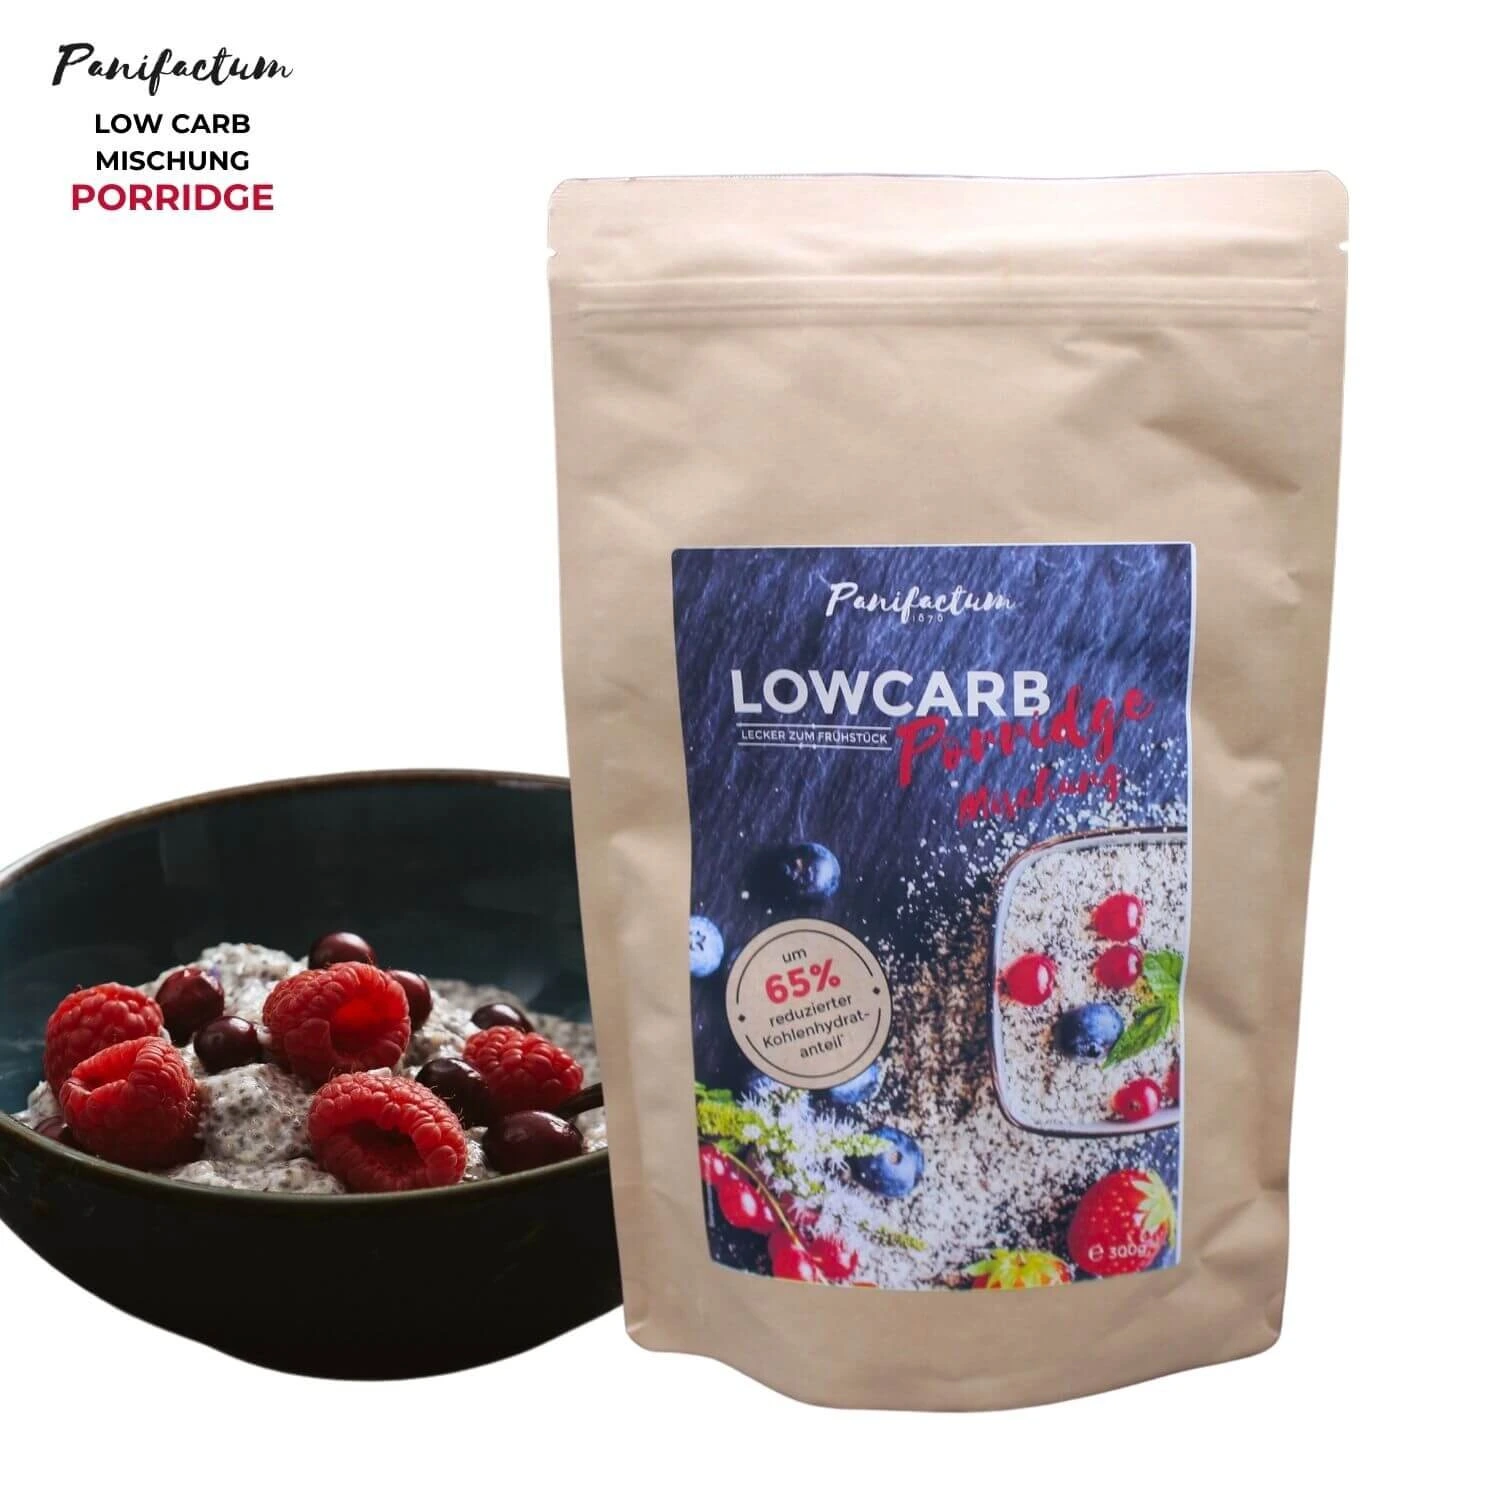 Low Carb Porridge *